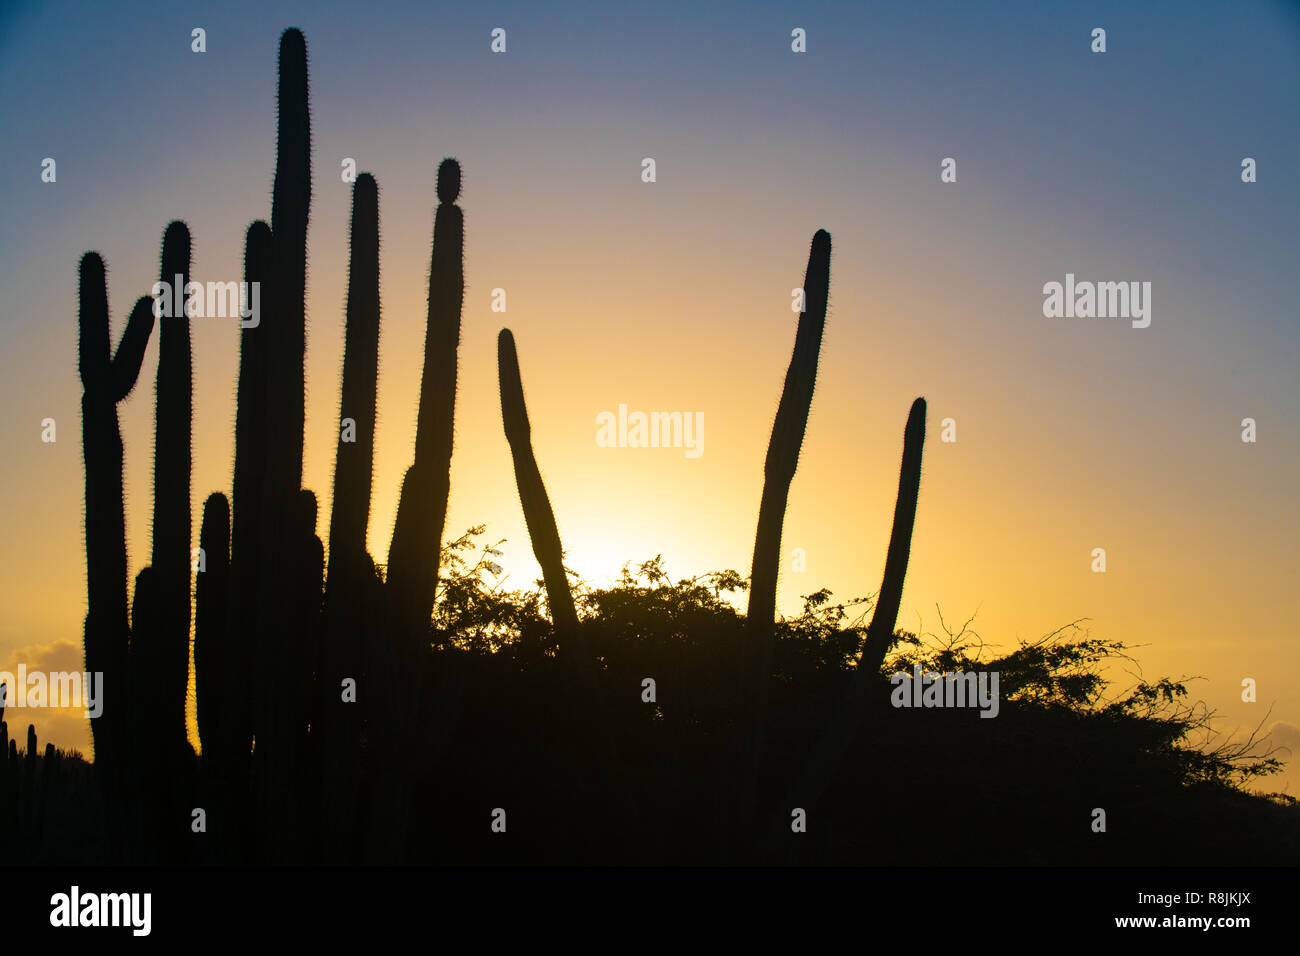 Le Parc national Arikok - Cactus au coucher du soleil paysage Aruba - Stenocereus griseus - cactus originaire de l'usine d'Aruba - cactus columnaires - desert landscape scene Banque D'Images